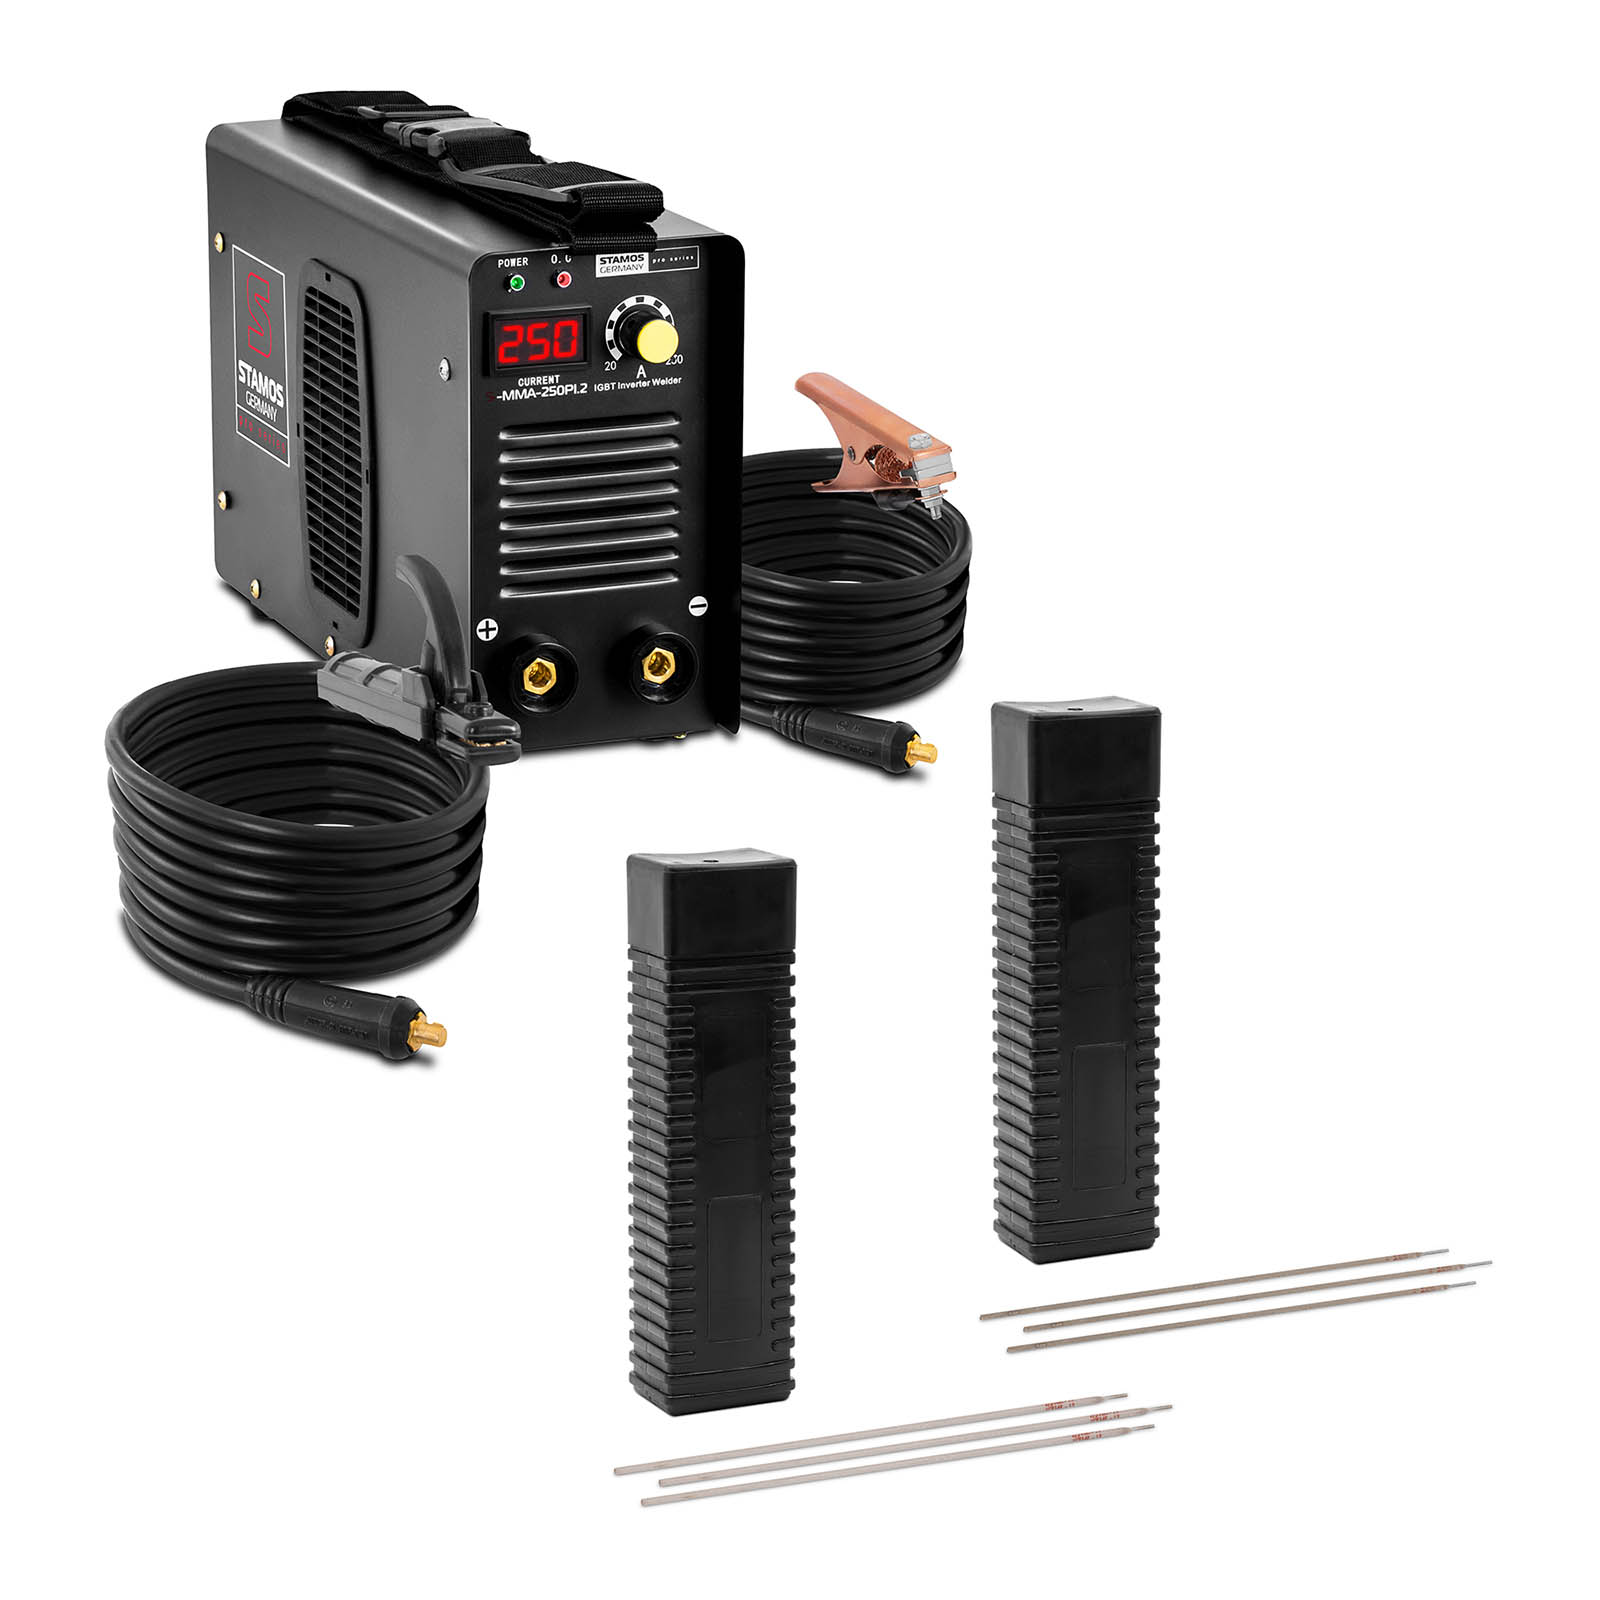 Svejssæt Elektrodesvejser - 250 A - 8 m kabel - 60 % arbejdscyklus - Elektroder - E6013 - Ø 2 x 300 mm - 5 kg & E316L-17 - 2,5 x 350 mm - 5 kg